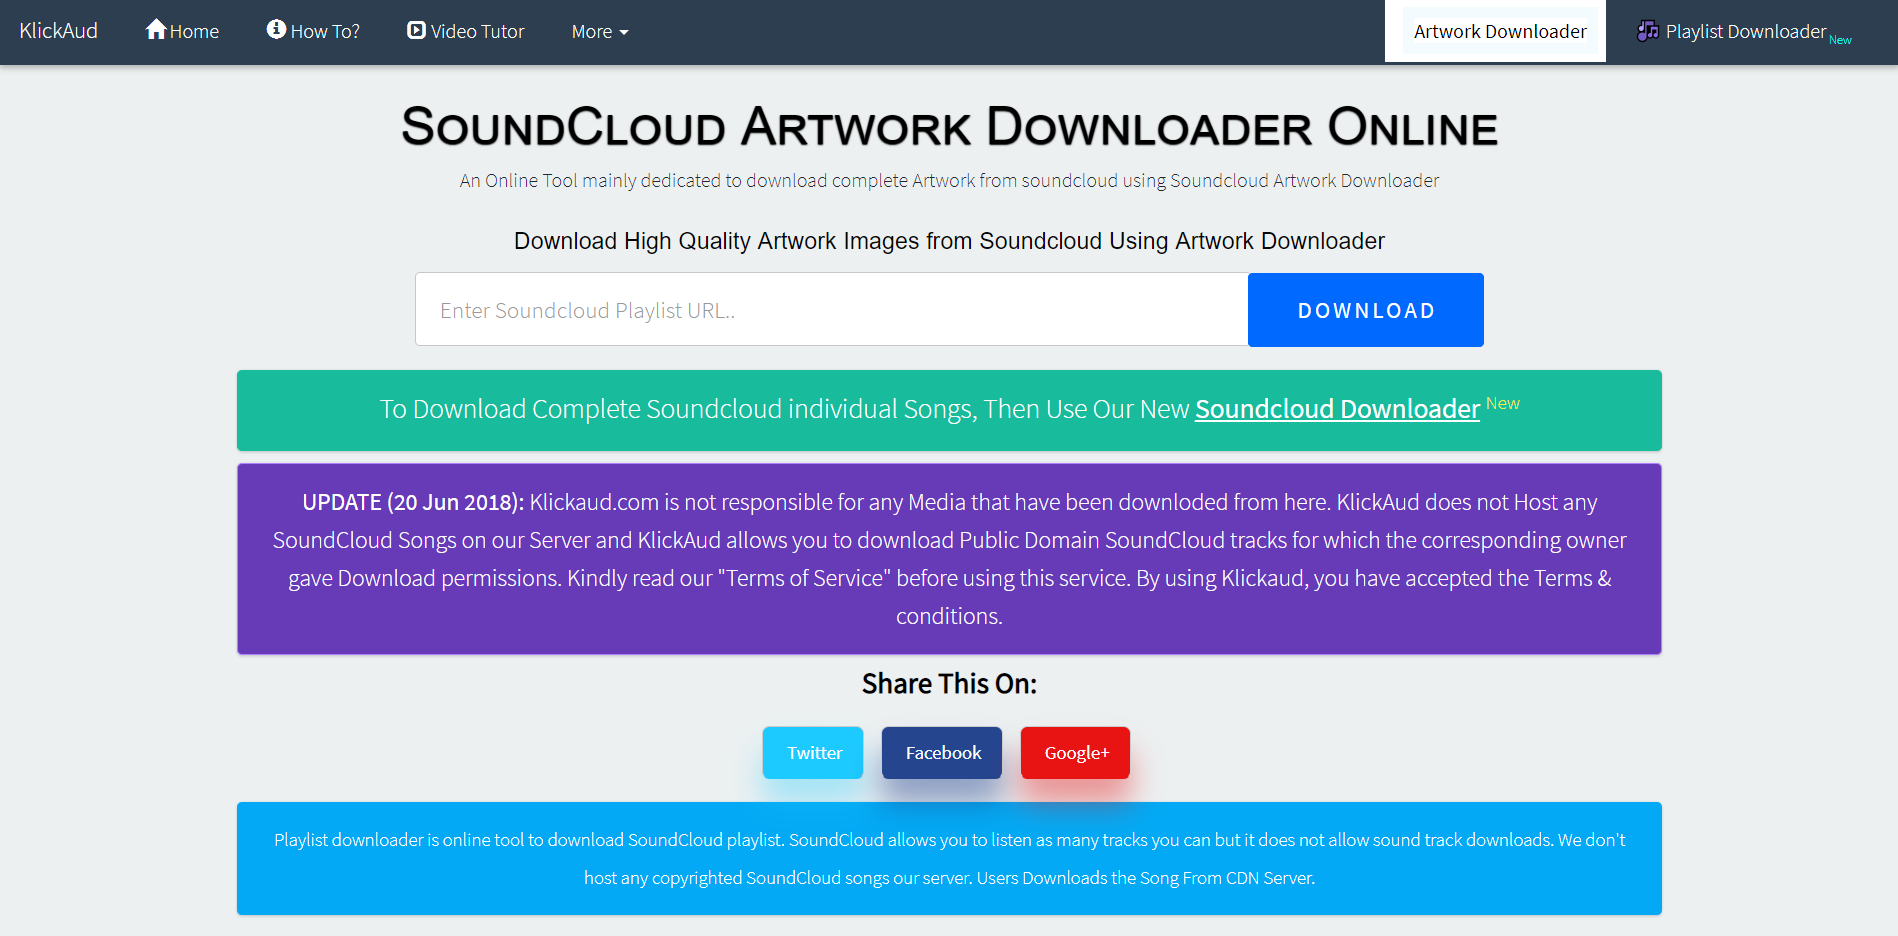 Soundcloud Artwork Downloader Online